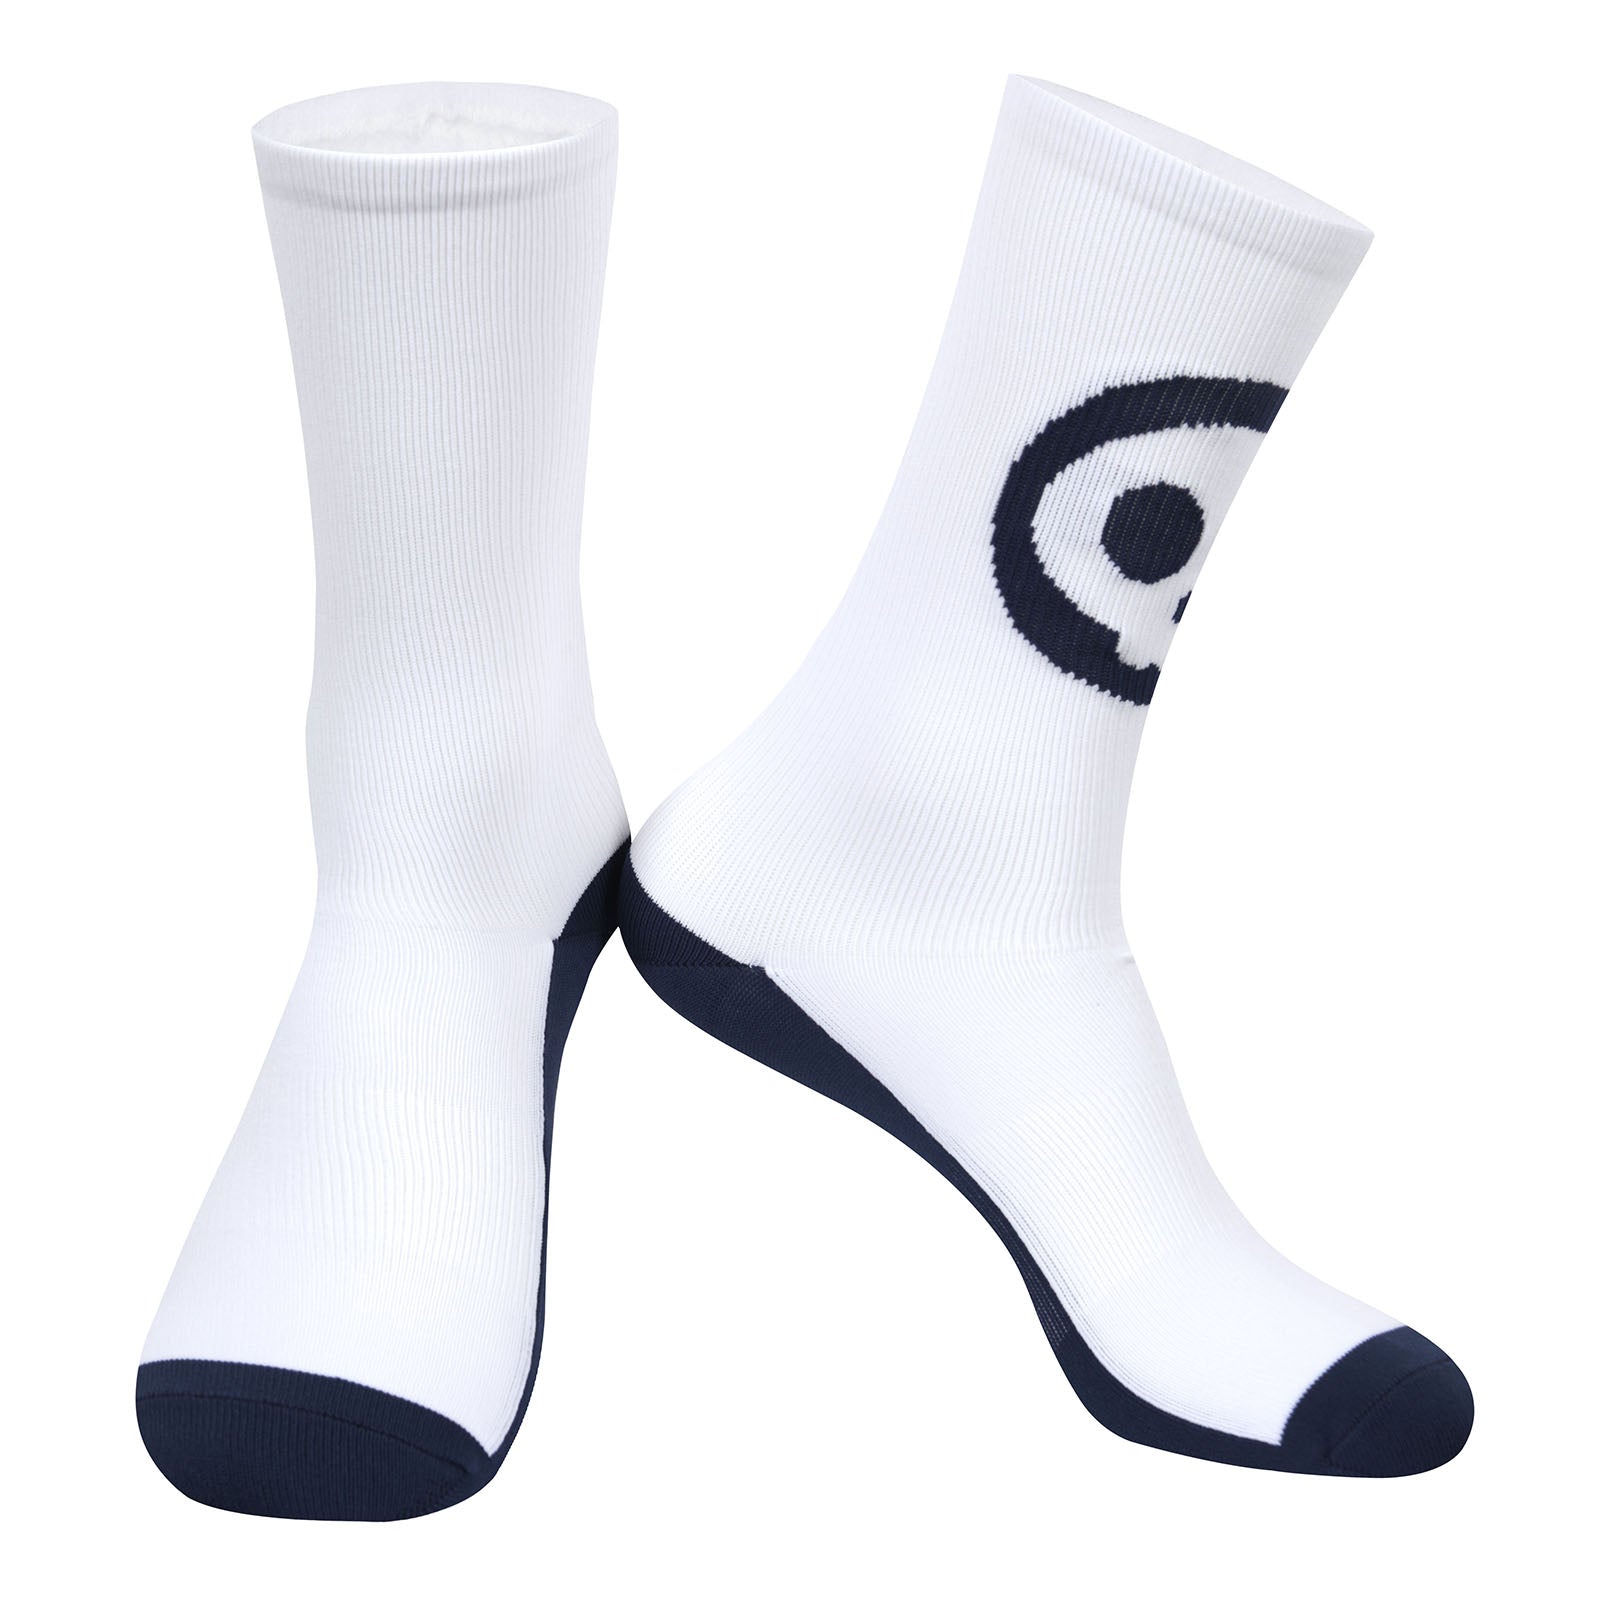 SKULL FISHNET Socks for Sale by krazyamerican